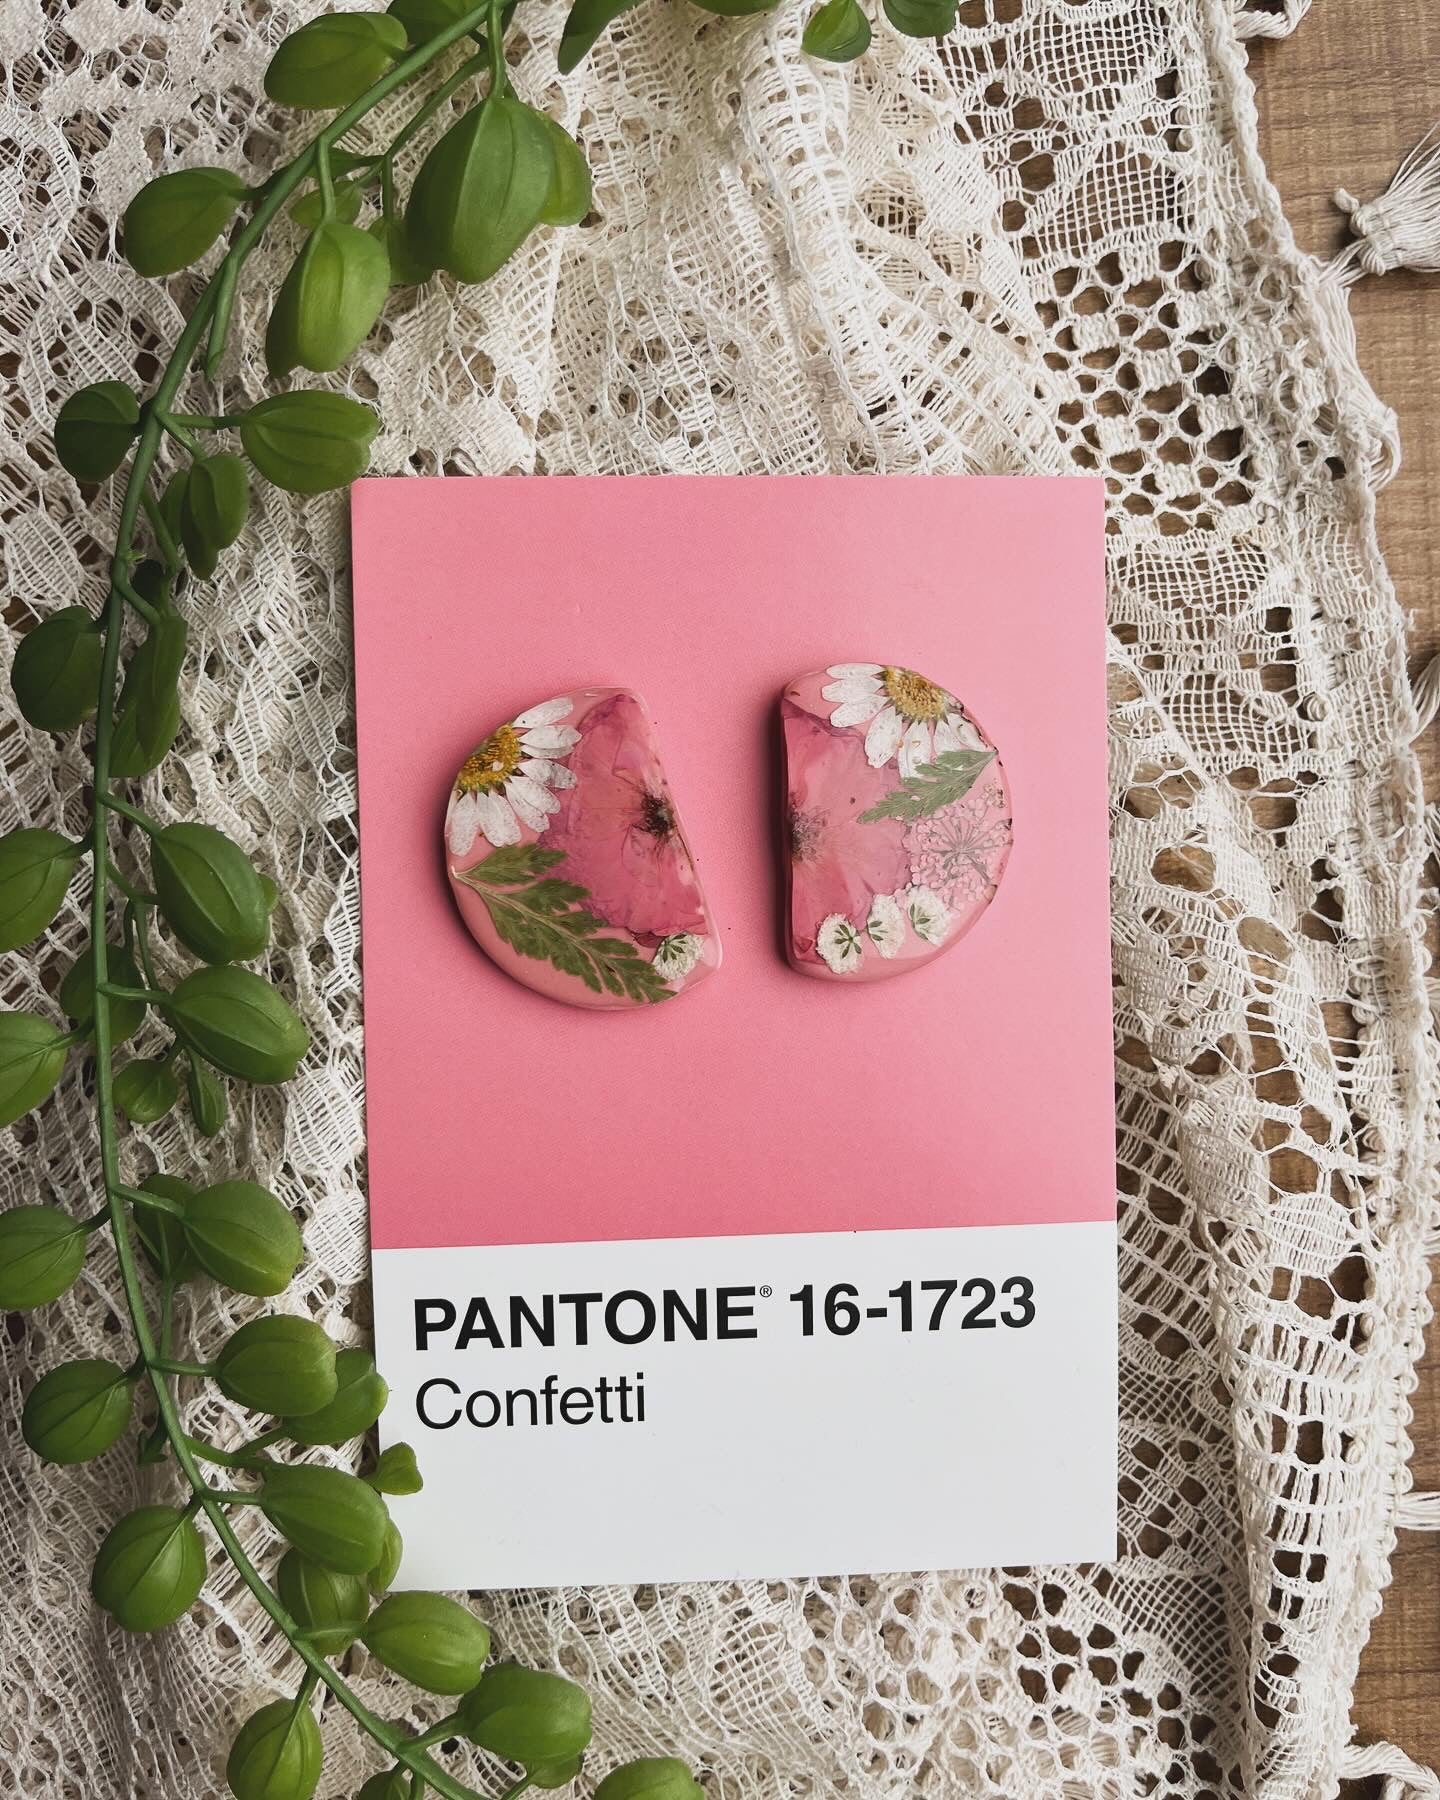 Pantone 16-1723 Confetti